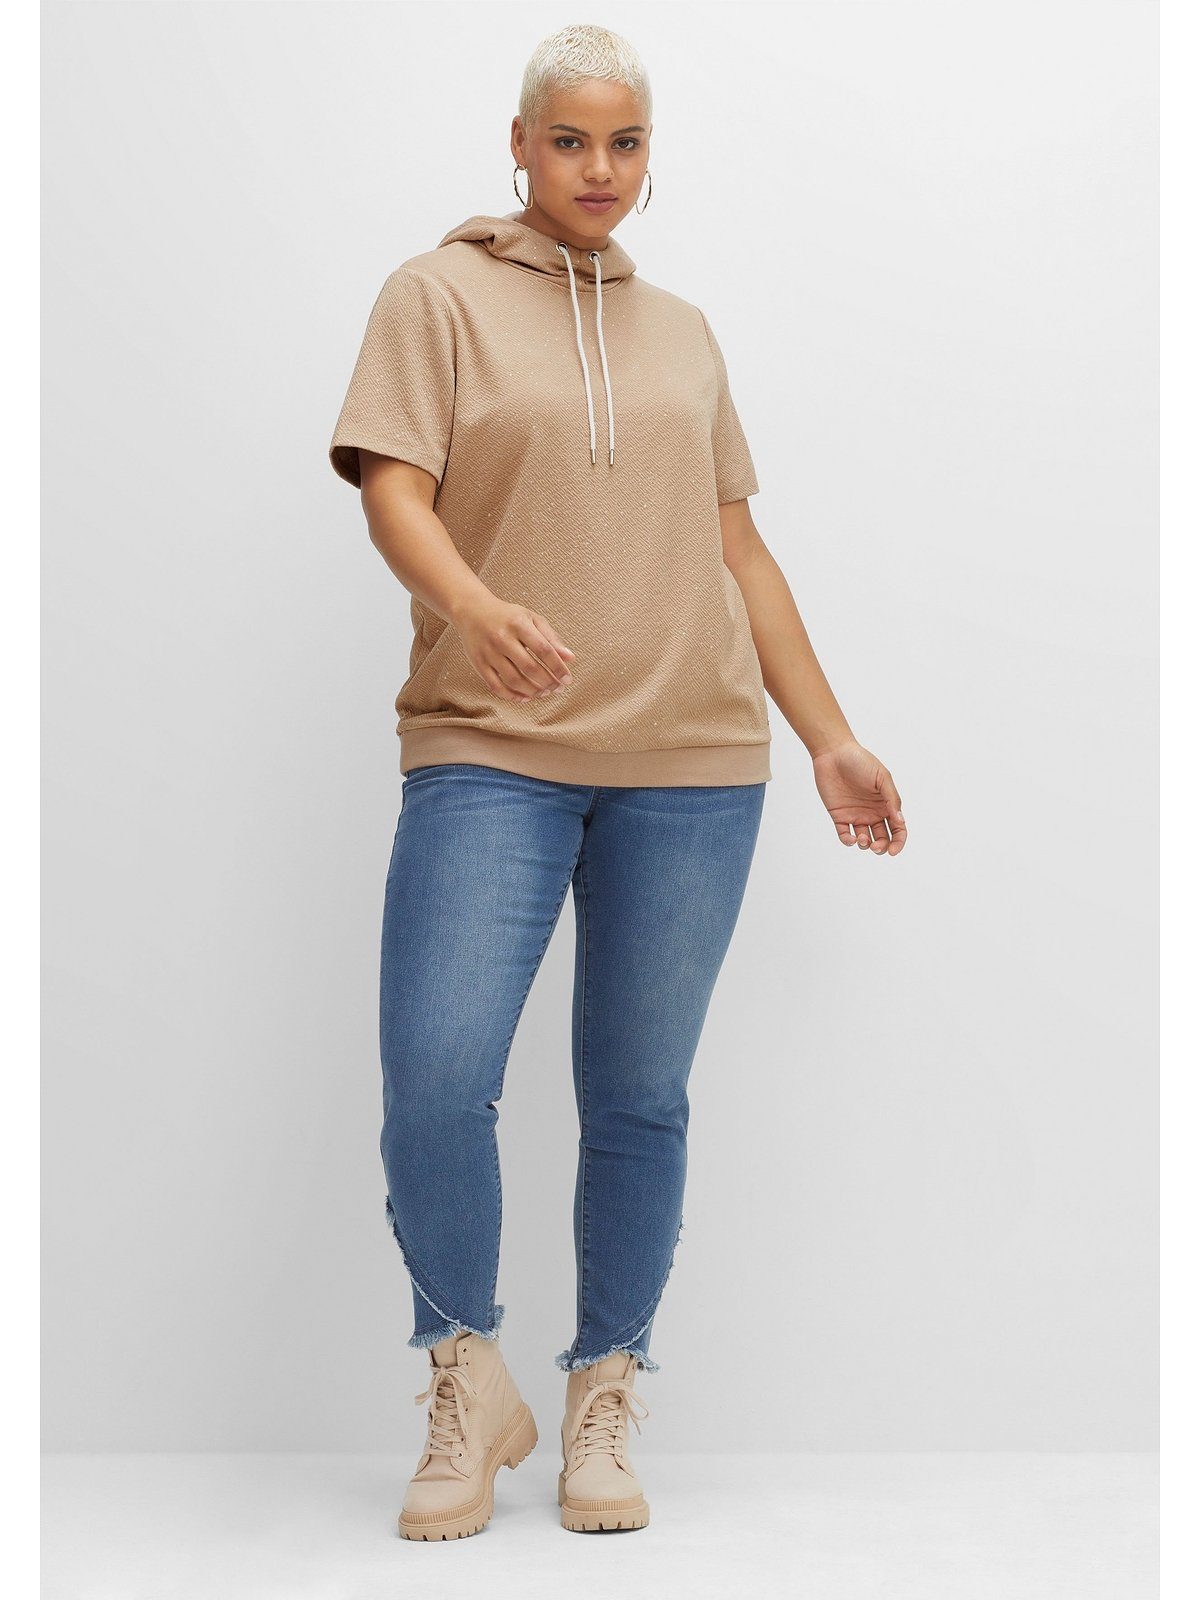 Sheego T-Shirt Große Größen aus cappuccino leichter mit meliert Kapuze Sweatware